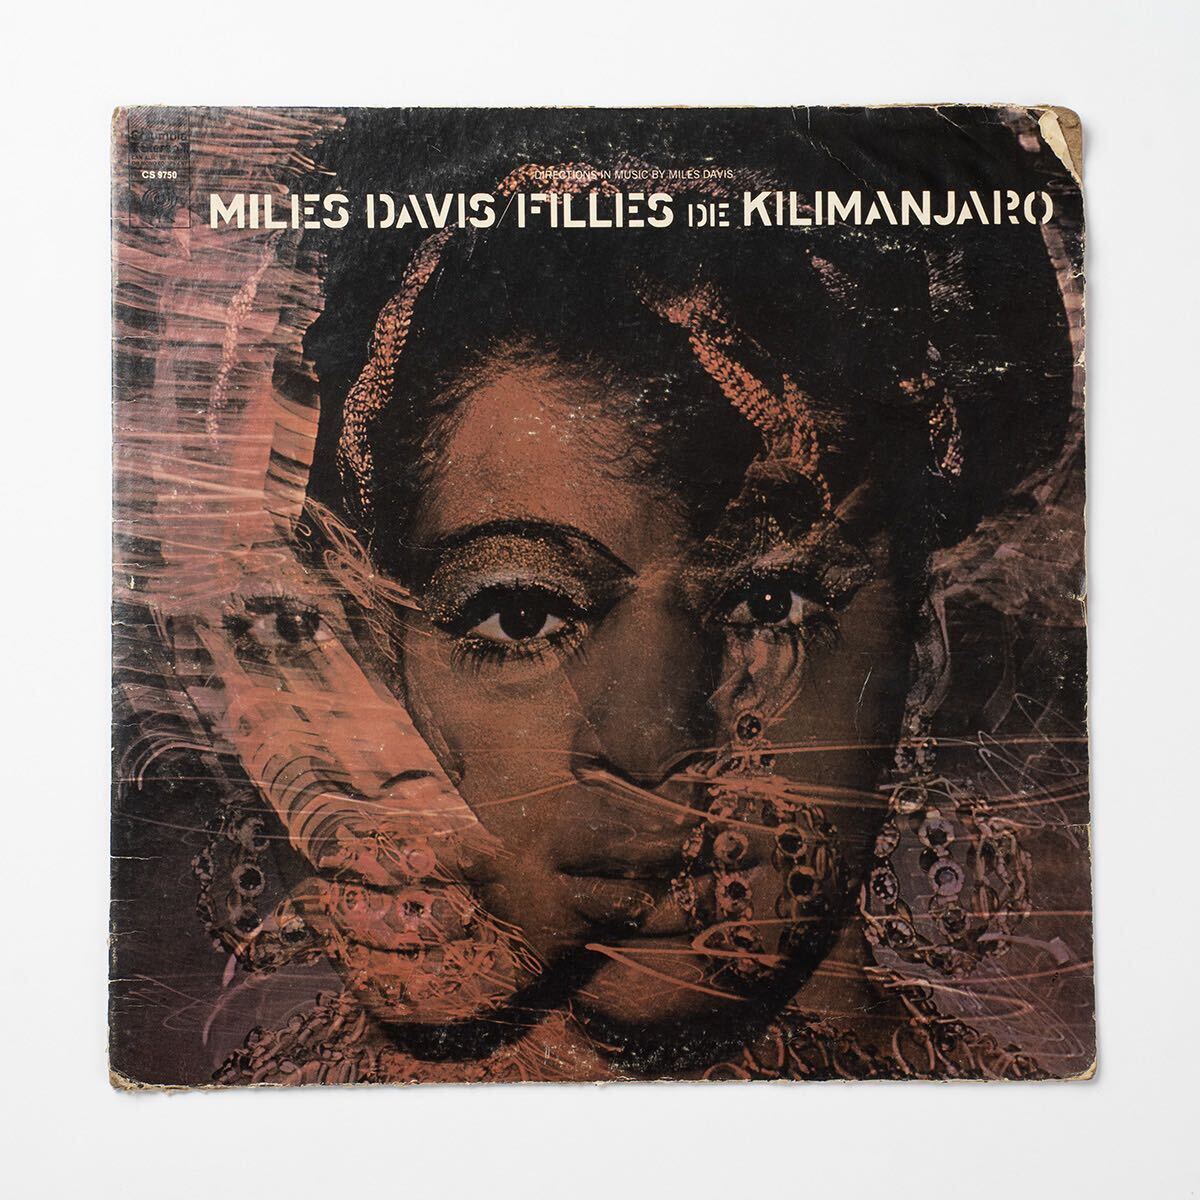 1A / 1Aマト 1stプレス 2eye USオリジナル盤 Miles Davis Filles De Kilimanjaro ジャケット裂けあり LP レコード_画像2